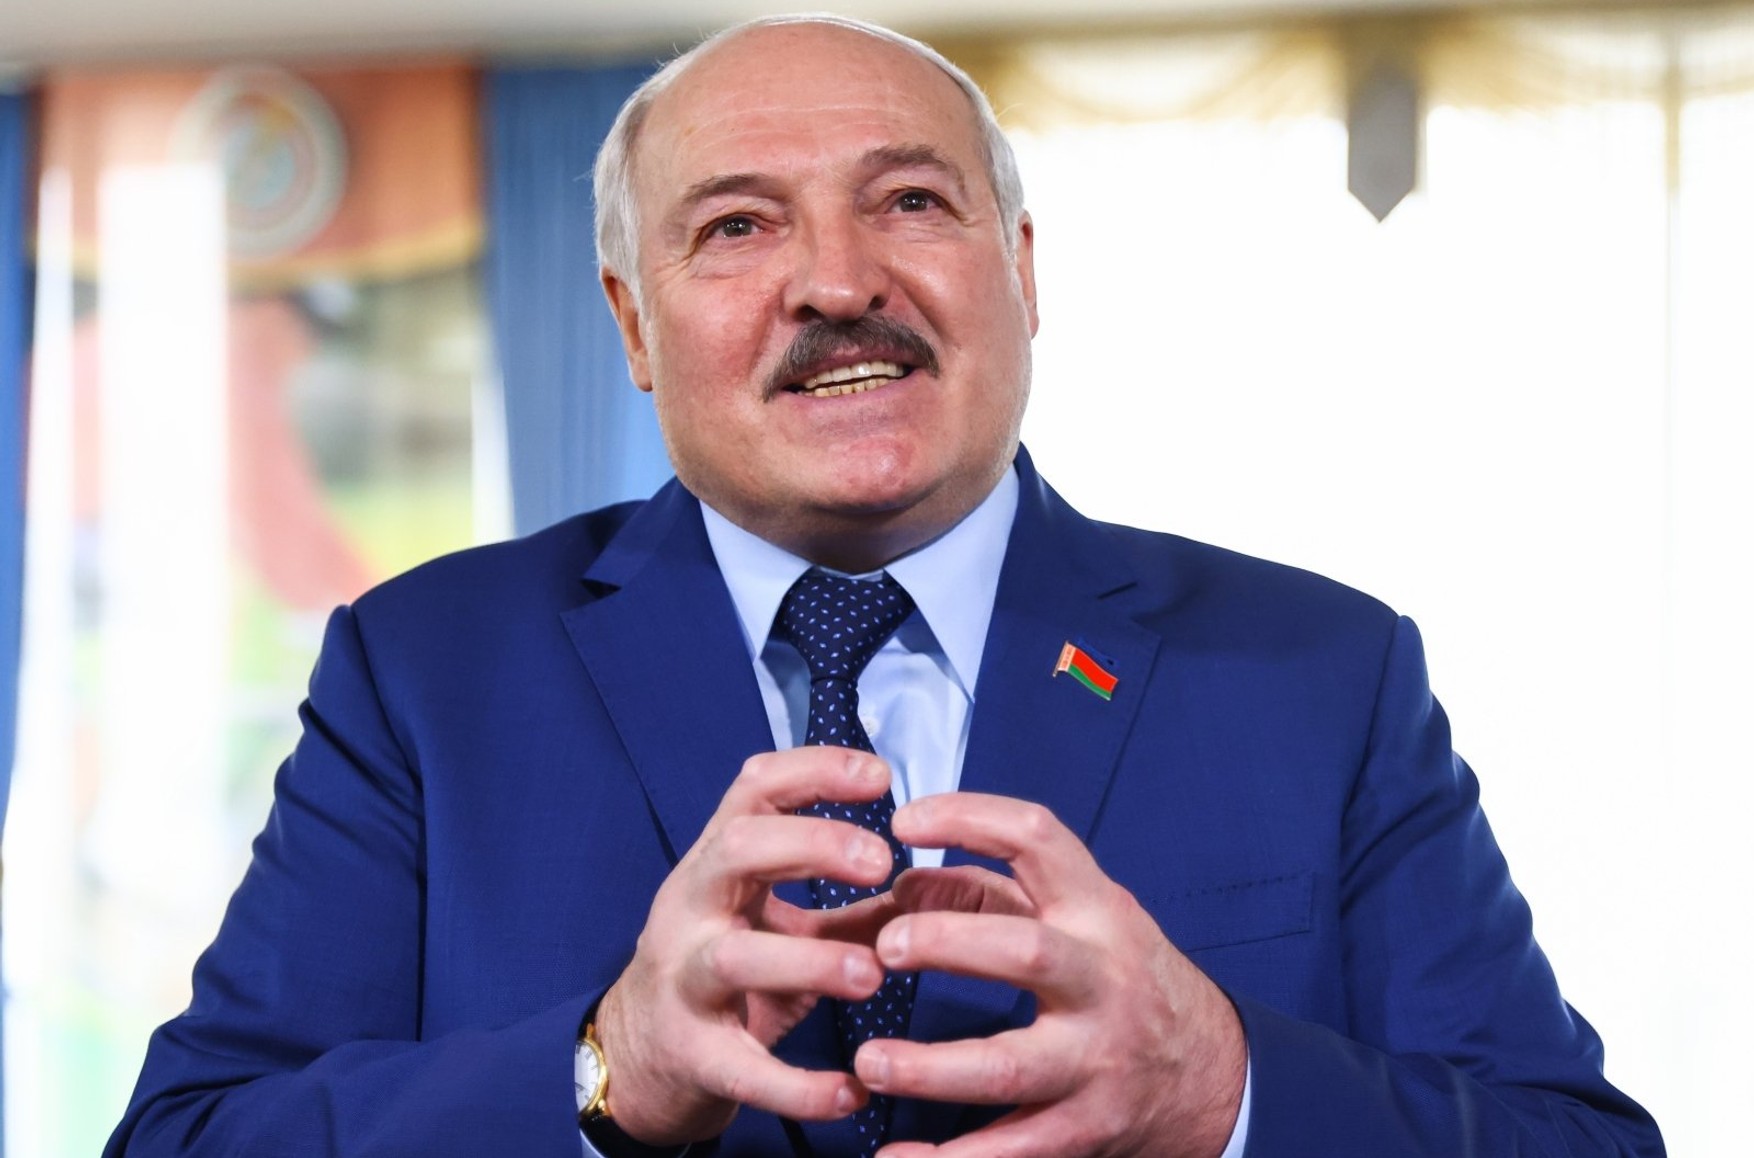 «Слава богу, у нас диктатура!» — Лукашенко обосновал необходимость диктаторского режима в Беларуси наличием соли